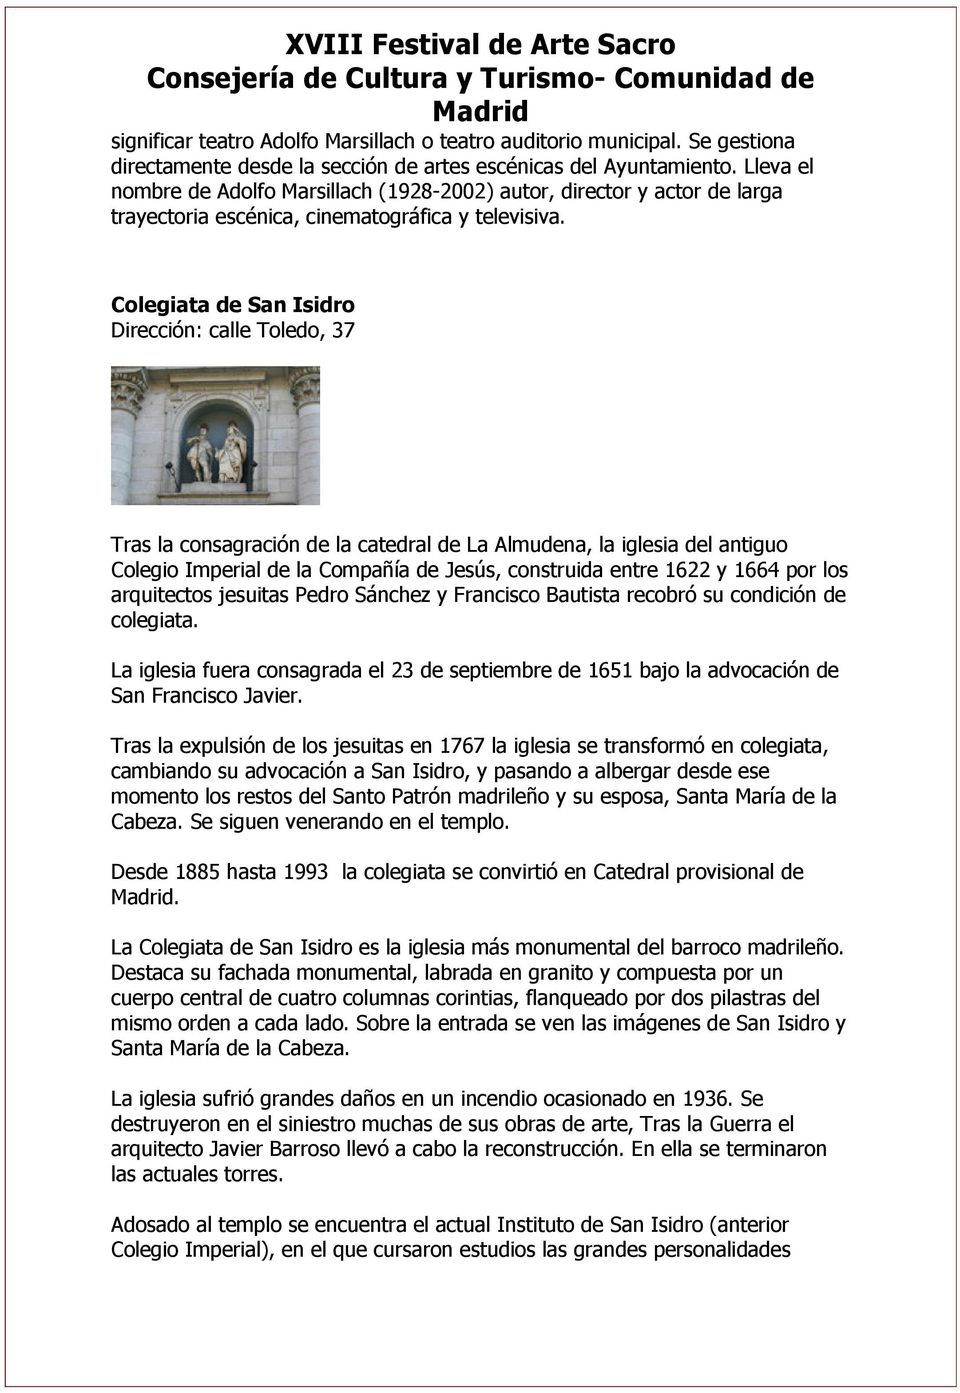 Colegiata de San Isidro Dirección: calle Toledo, 37 Tras la consagración de la catedral de La Almudena, la iglesia del antiguo Colegio Imperial de la Compañía de Jesús, construida entre 1622 y 1664